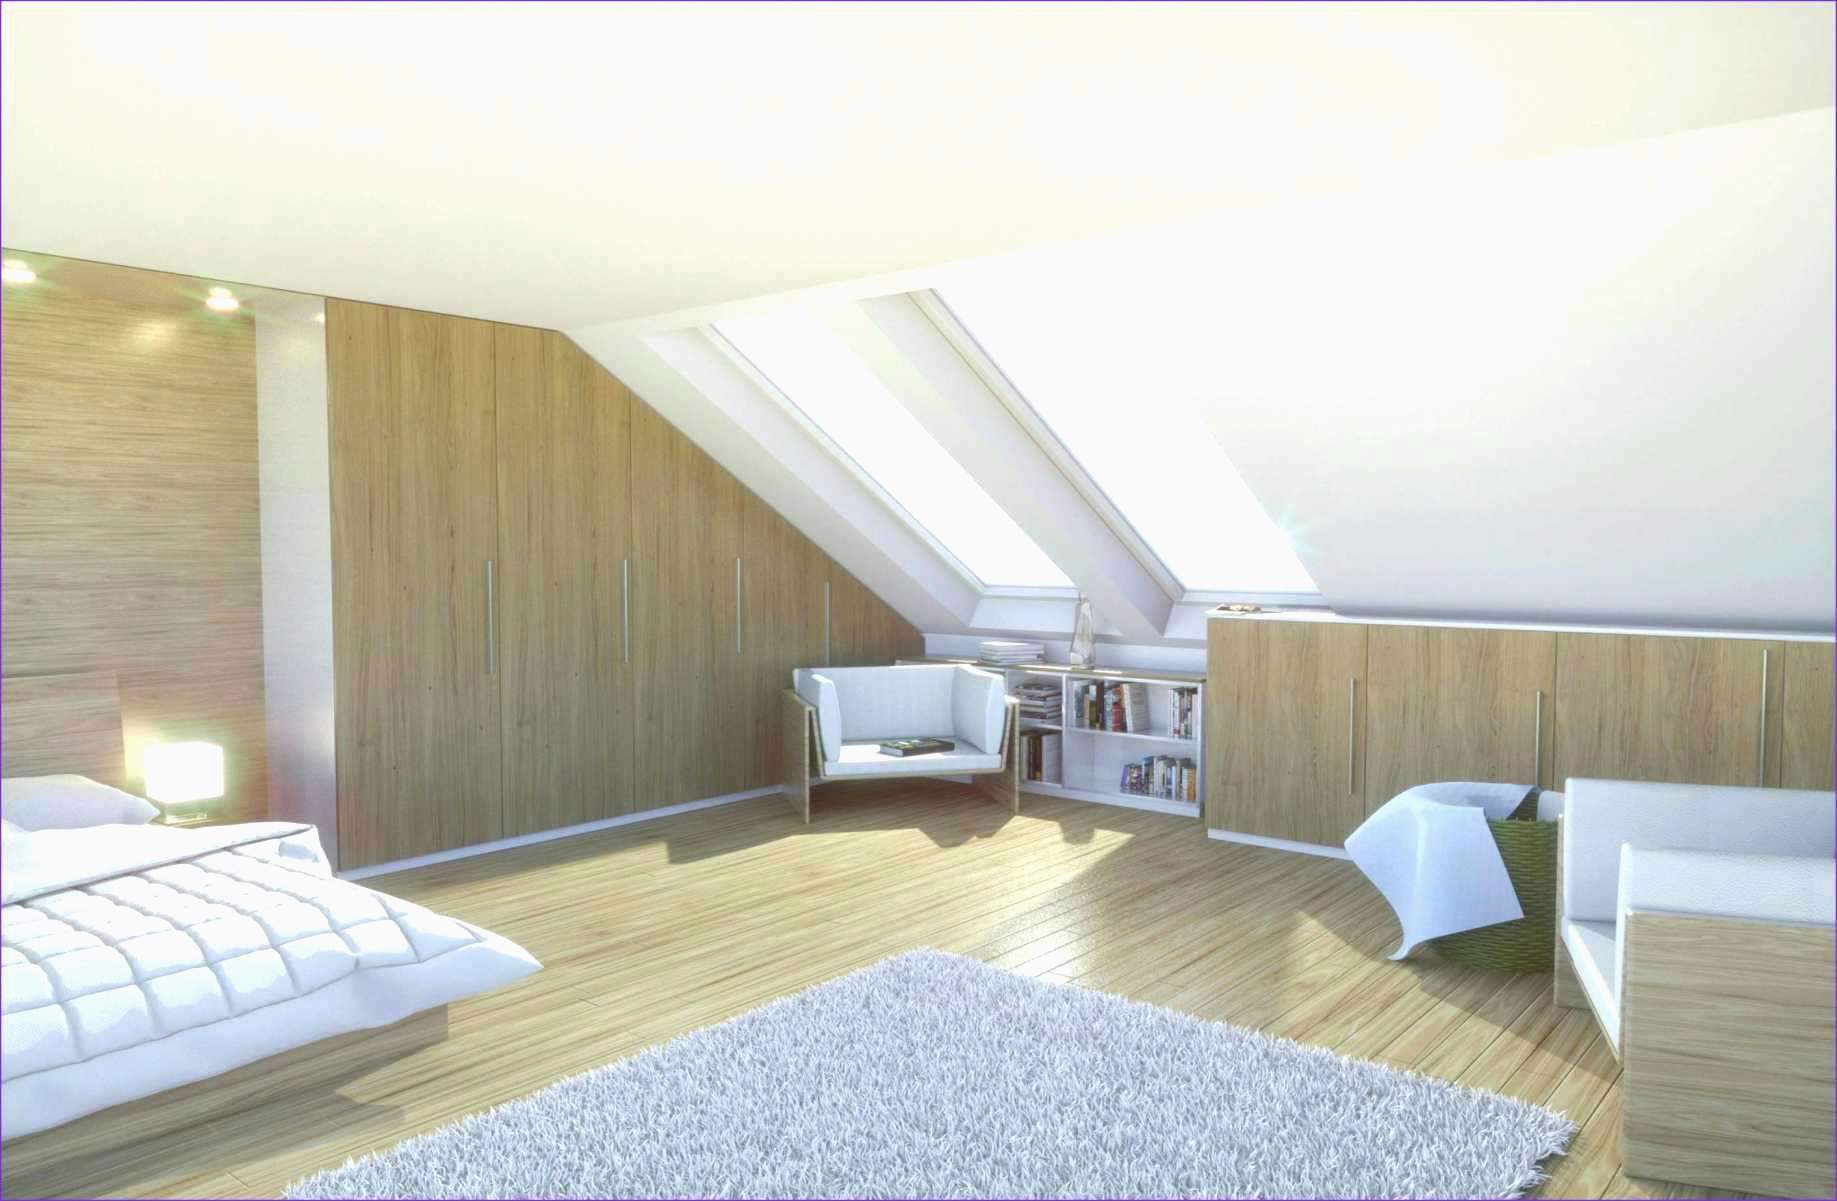 wohnzimmer ideen pinterest elegant wohnzimmer skandinavisch plus elegant deko ideen diy of wohnzimmer ideen pinterest